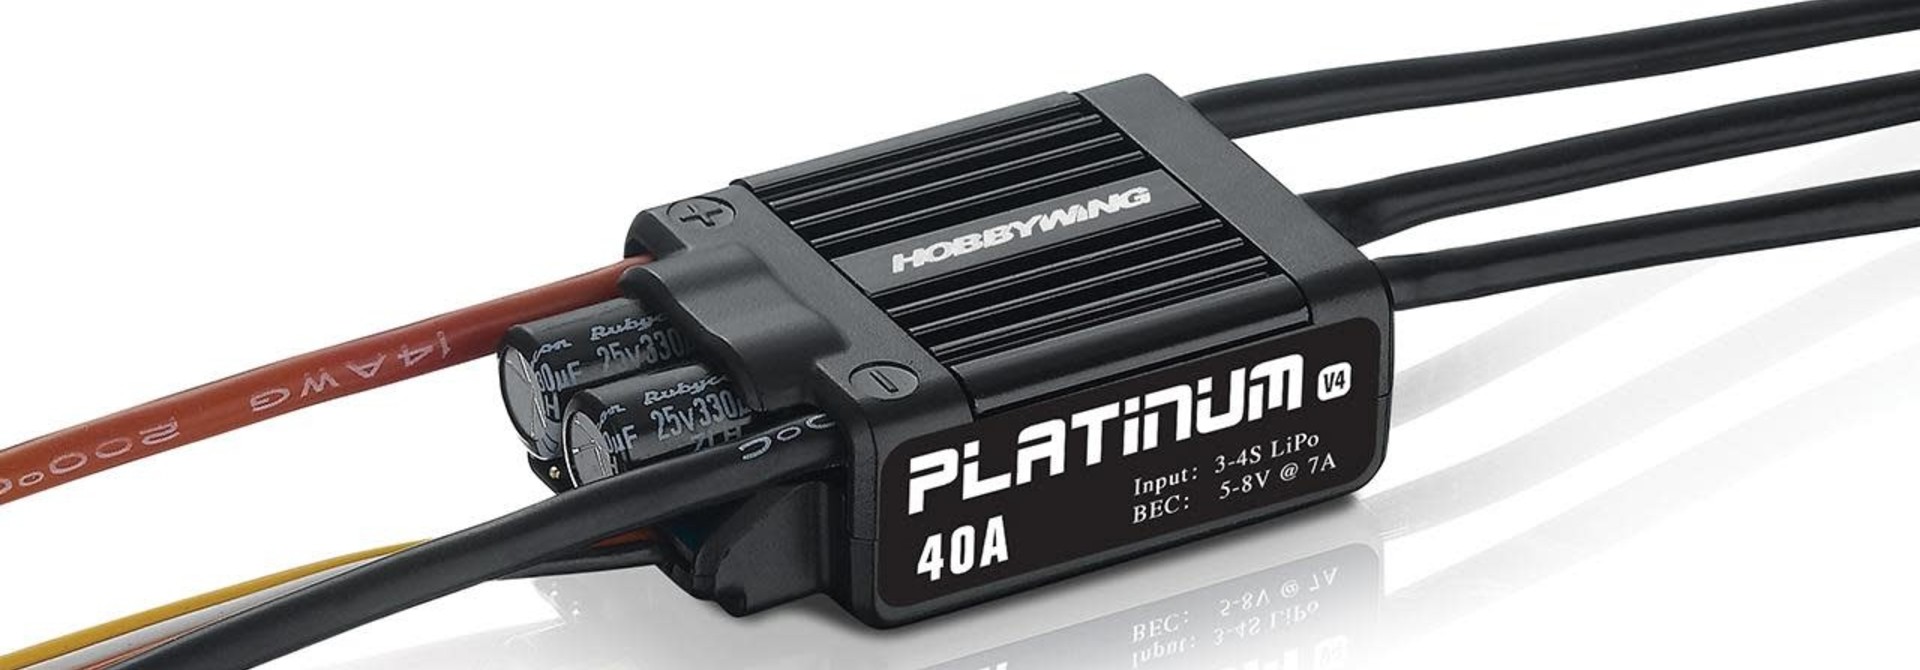 Hobbywing Platinum Pro 40A ESC V4 3-4s, 7A BEC